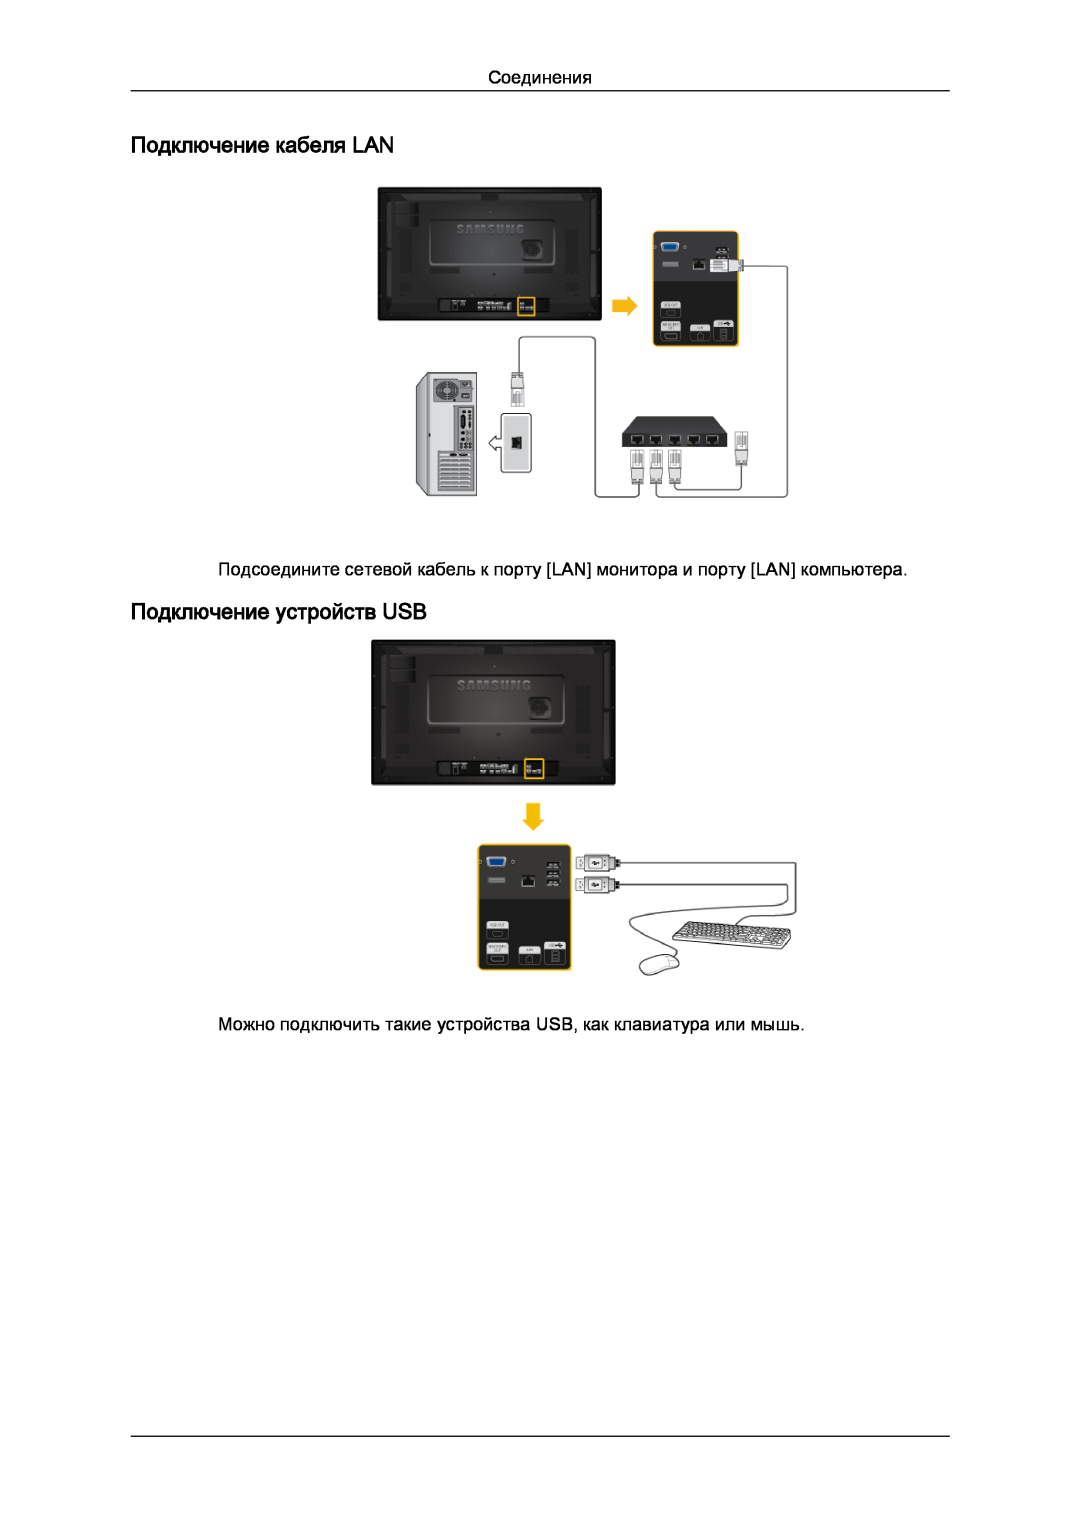 Samsung LH32CRTMBC/EN, LH32CRSMBD/EN manual Подключение кабеля LAN, Подключение устройств USB, Соединения 